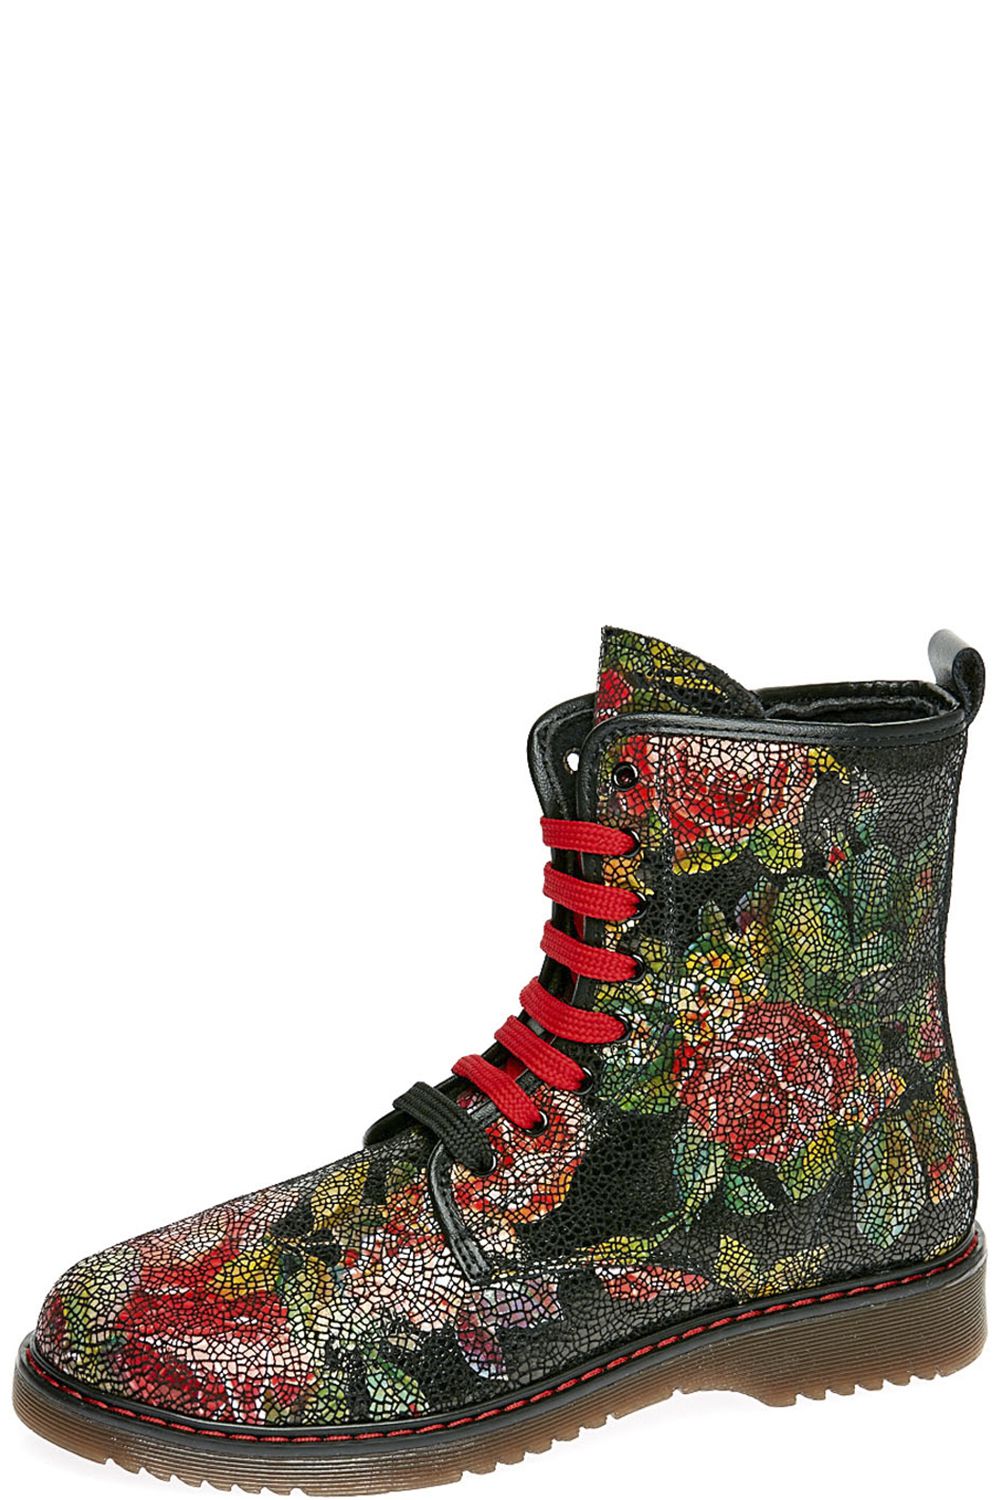 Ботинки Ciao Bimbi, размер 29, цвет разноцветный 17543/01/62RIK - фото 1